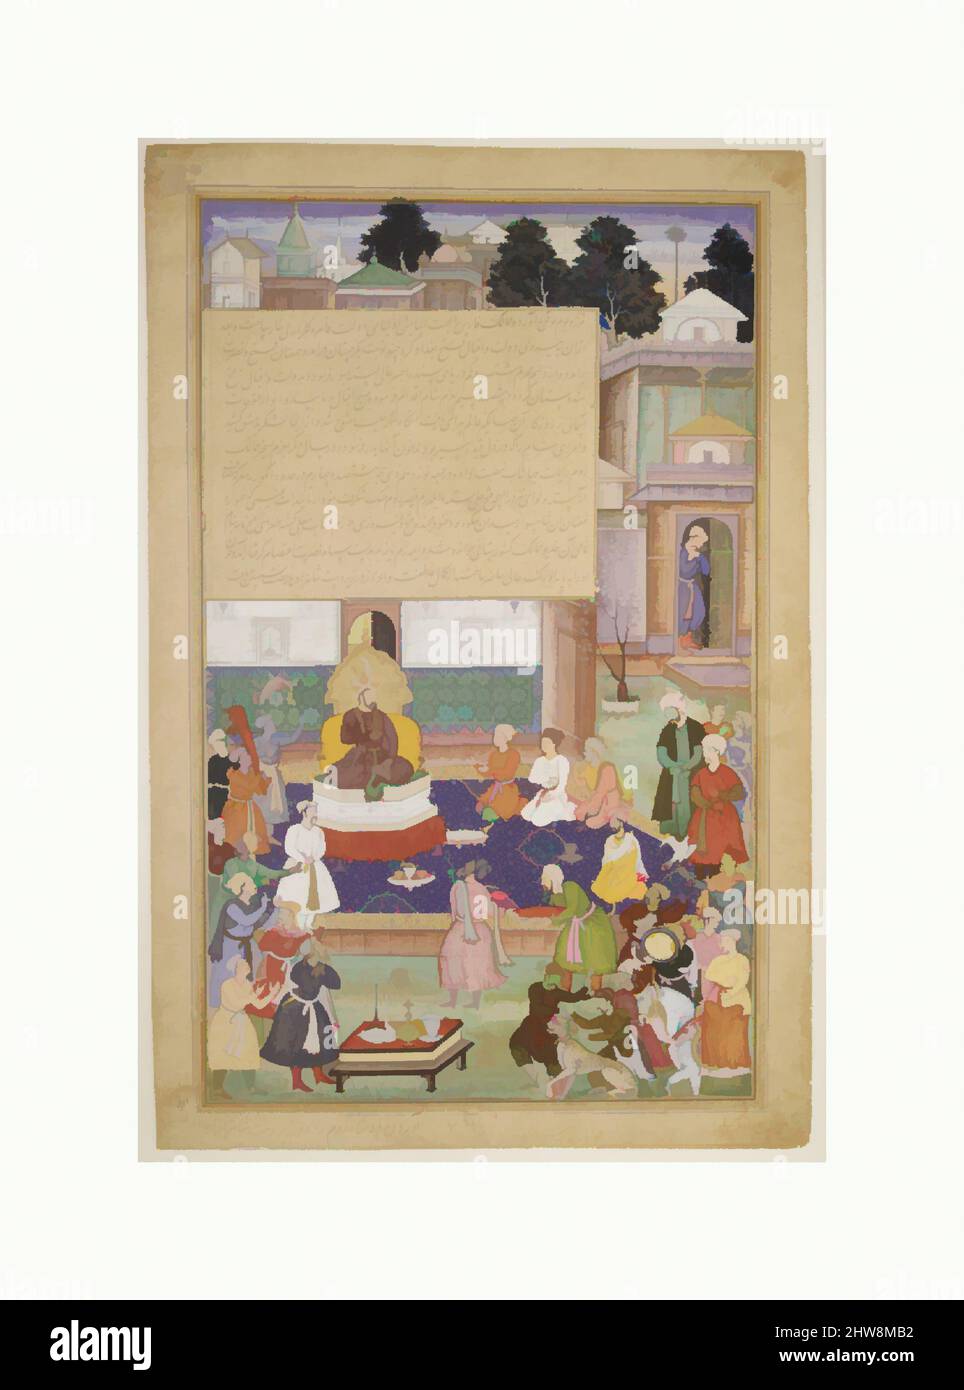 Art inspiré par Sultan Bayazid Before Timur', Folio d'an Akbarnama (Histoire d'Akbar), ca. 1600, fabriqué dans le Pakistan d'aujourd'hui, probablement Lahore, encre, aquarelle opaque, et or sur papier, image: H.13 3/8 in. (34 cm), CODICES, peinture par Dharam Das, c'est une seule feuille d'un maintenant, les œuvres classiques modernisées par Artotop avec un peu de modernité. Formes, couleur et valeur, impact visuel accrocheur sur l'art émotions par la liberté d'œuvres d'art d'une manière contemporaine. Un message intemporel qui cherche une nouvelle direction créative. Artistes qui se tournent vers le support numérique et créent le NFT Artotop Banque D'Images